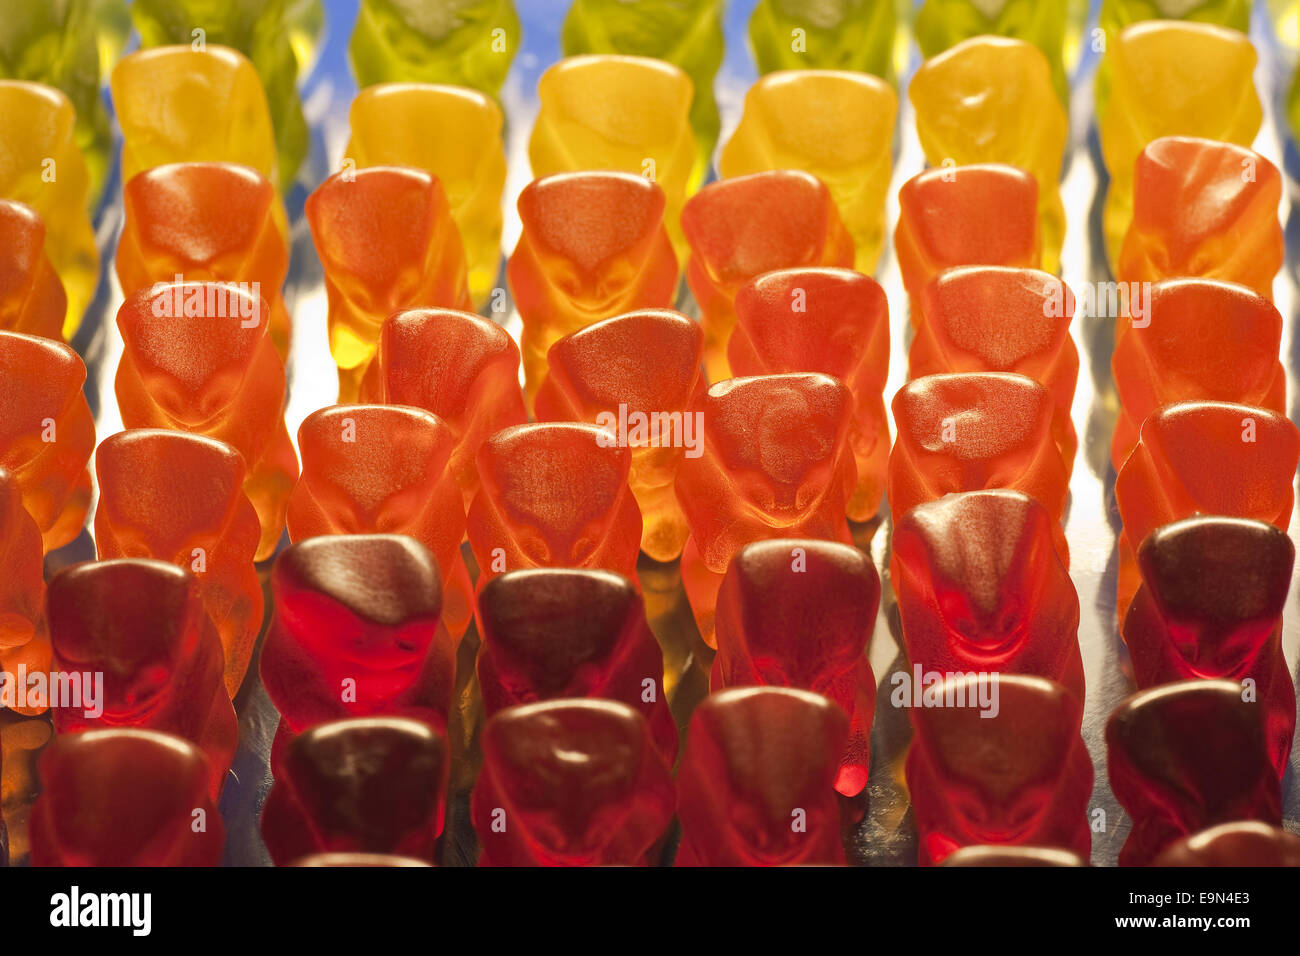 Gruppo di Gummi bears in diversi colori Foto Stock